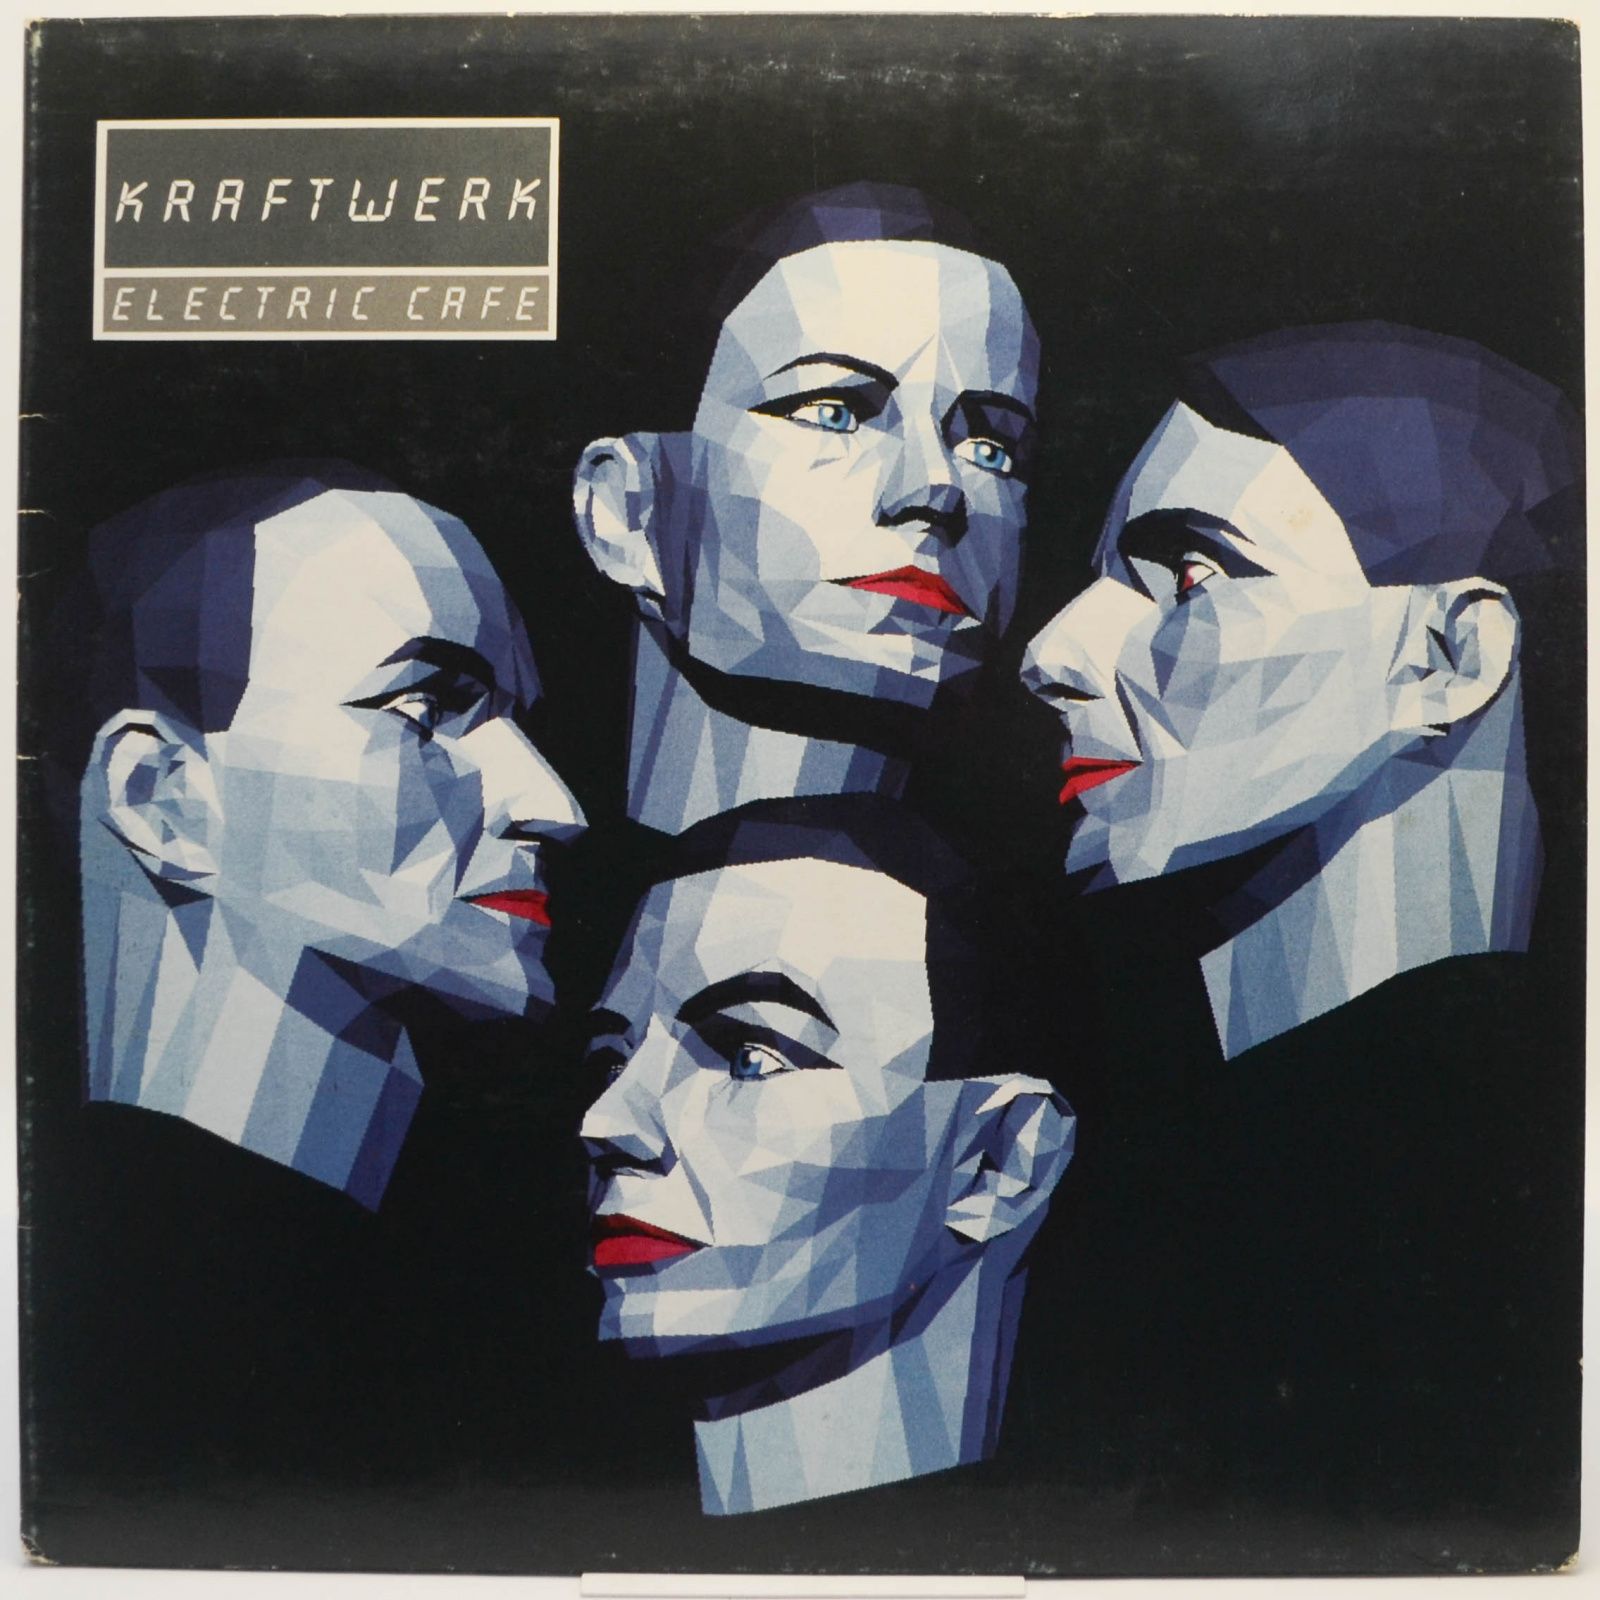 Kraftwerk — Electric Cafe, 1986